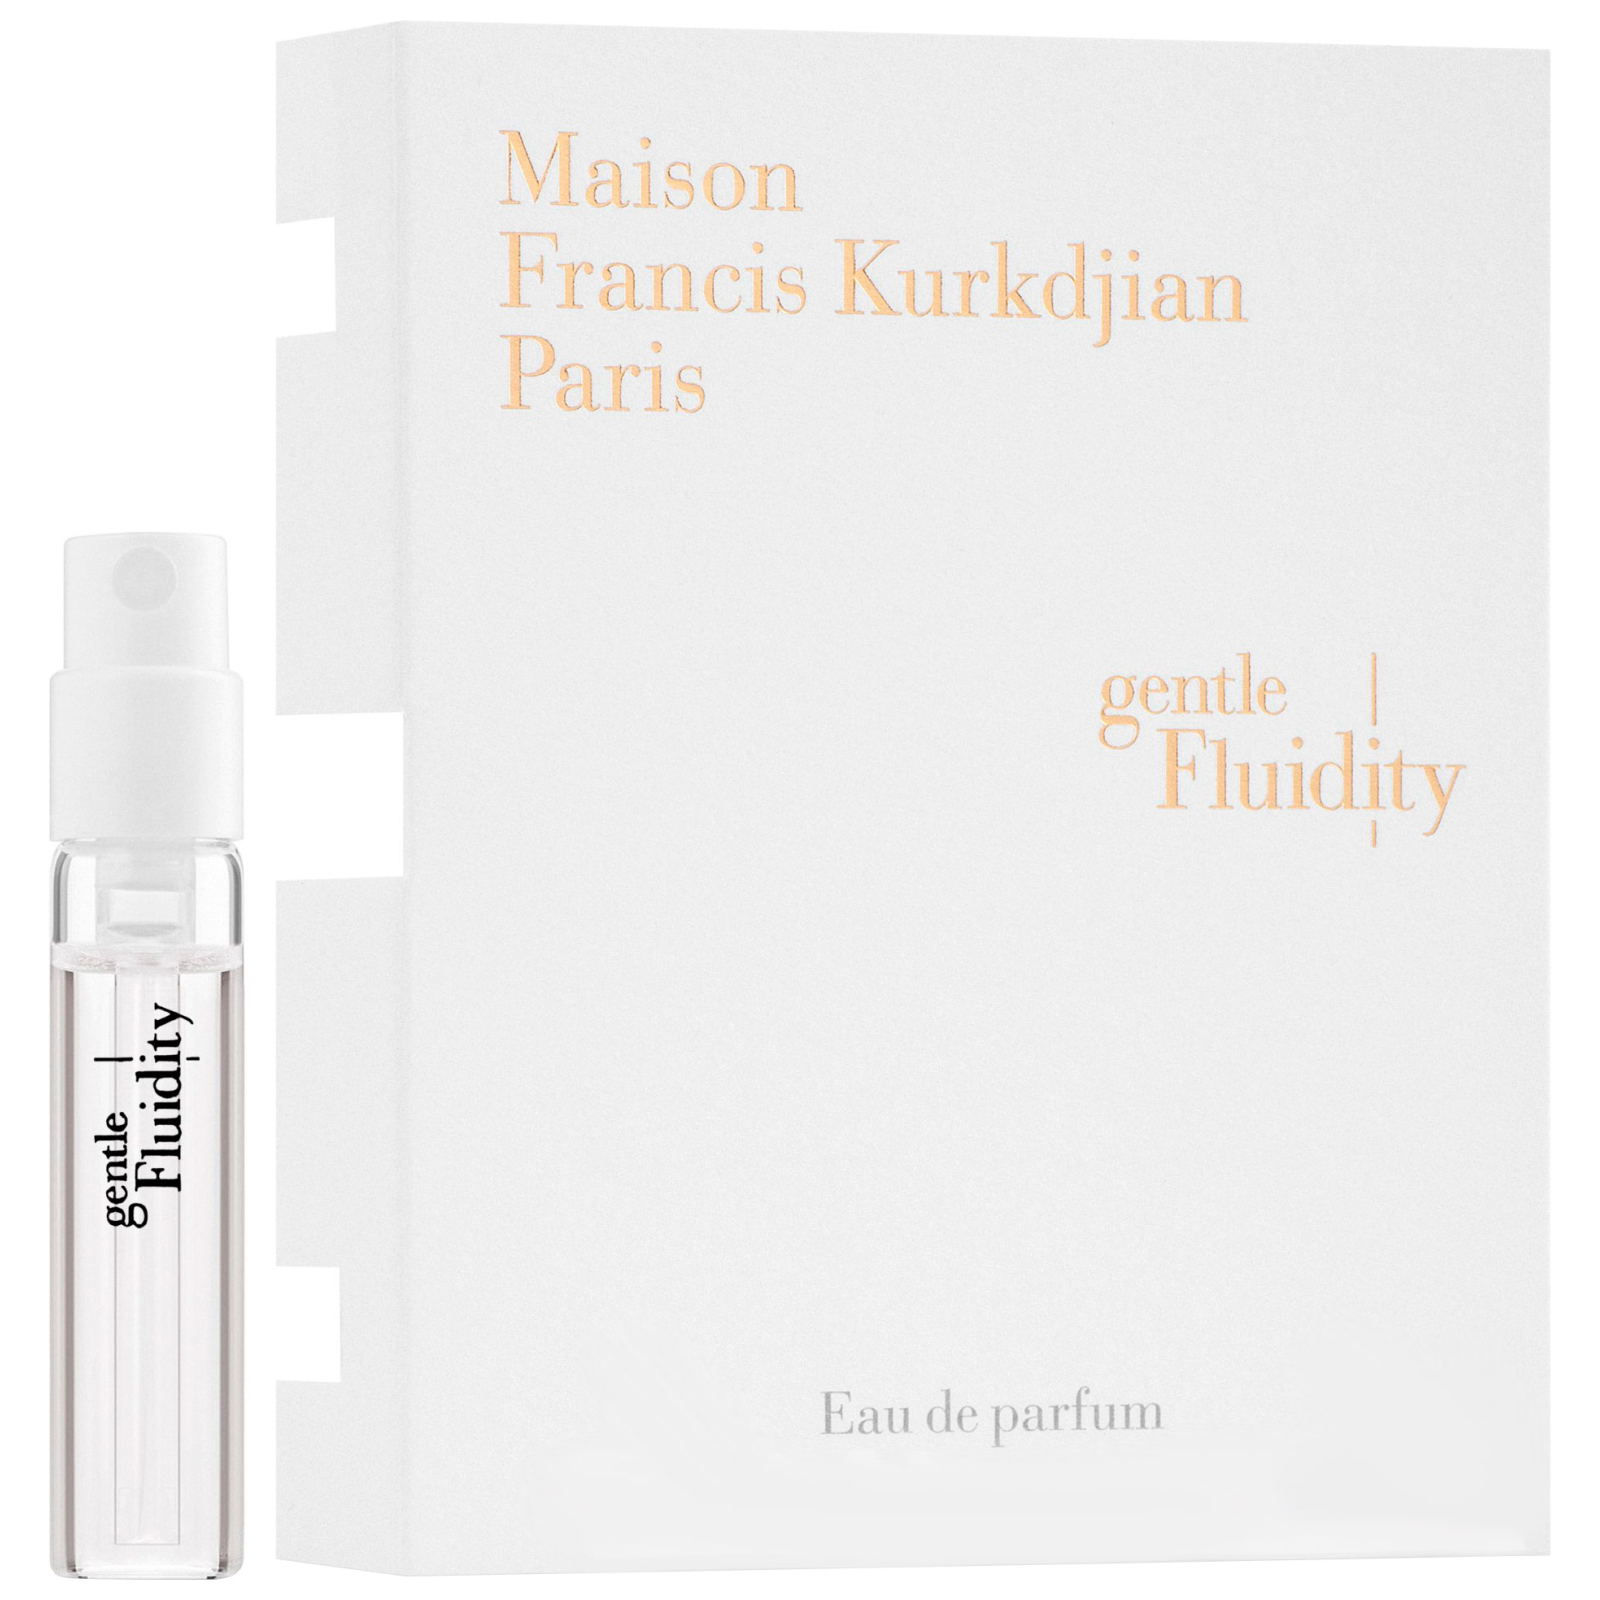 Парфюмированная вода Maison Francis Kurkdjian Gentle Fluidity Gold пробник 2 мл (3700559607725)